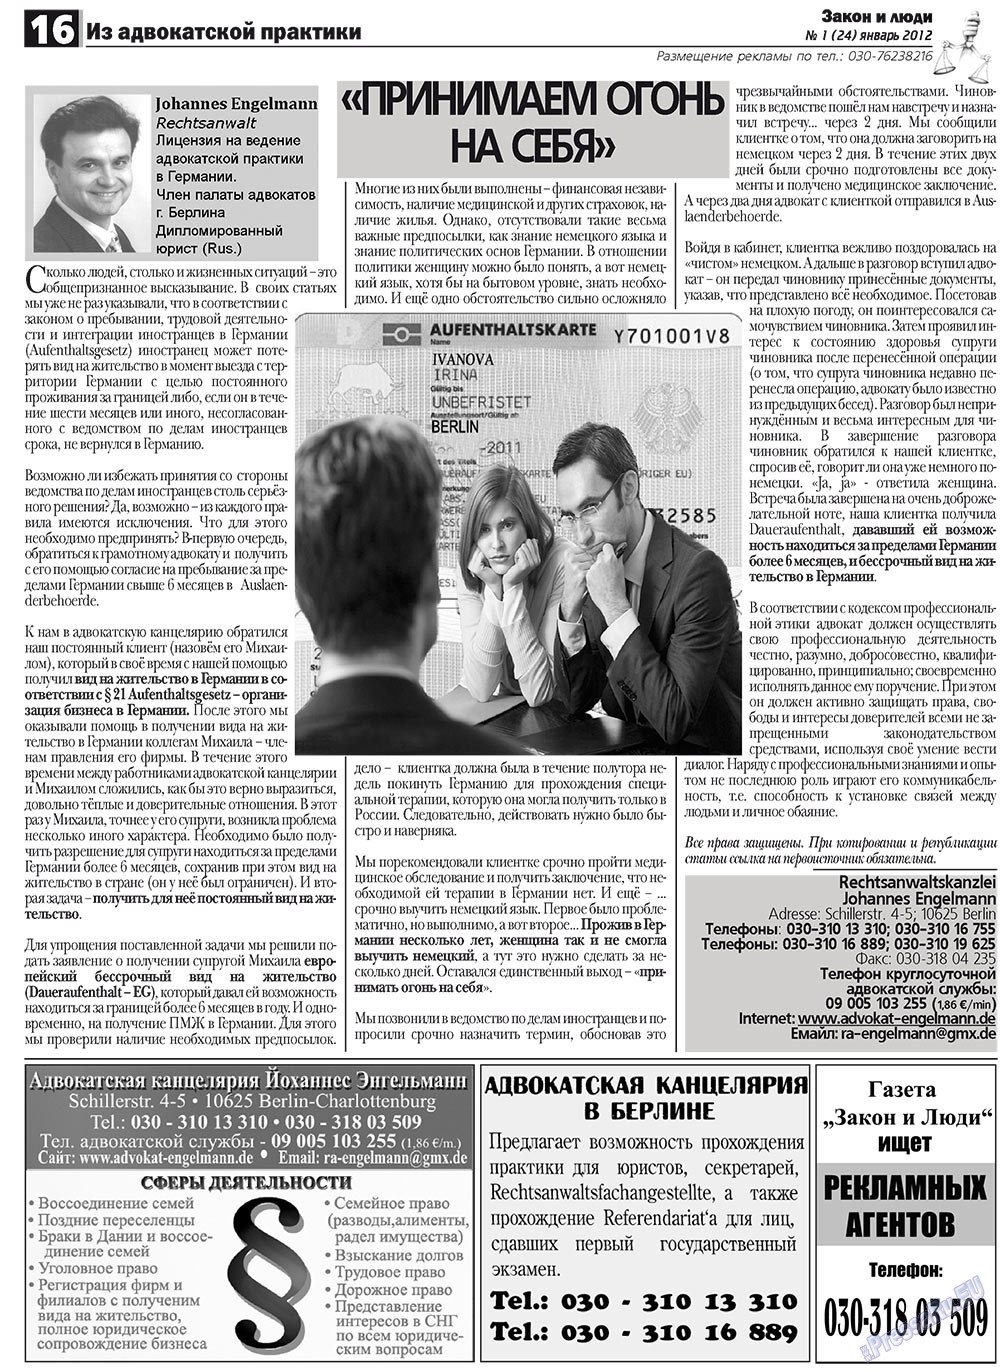 Закон и люди, газета. 2012 №1 стр.16